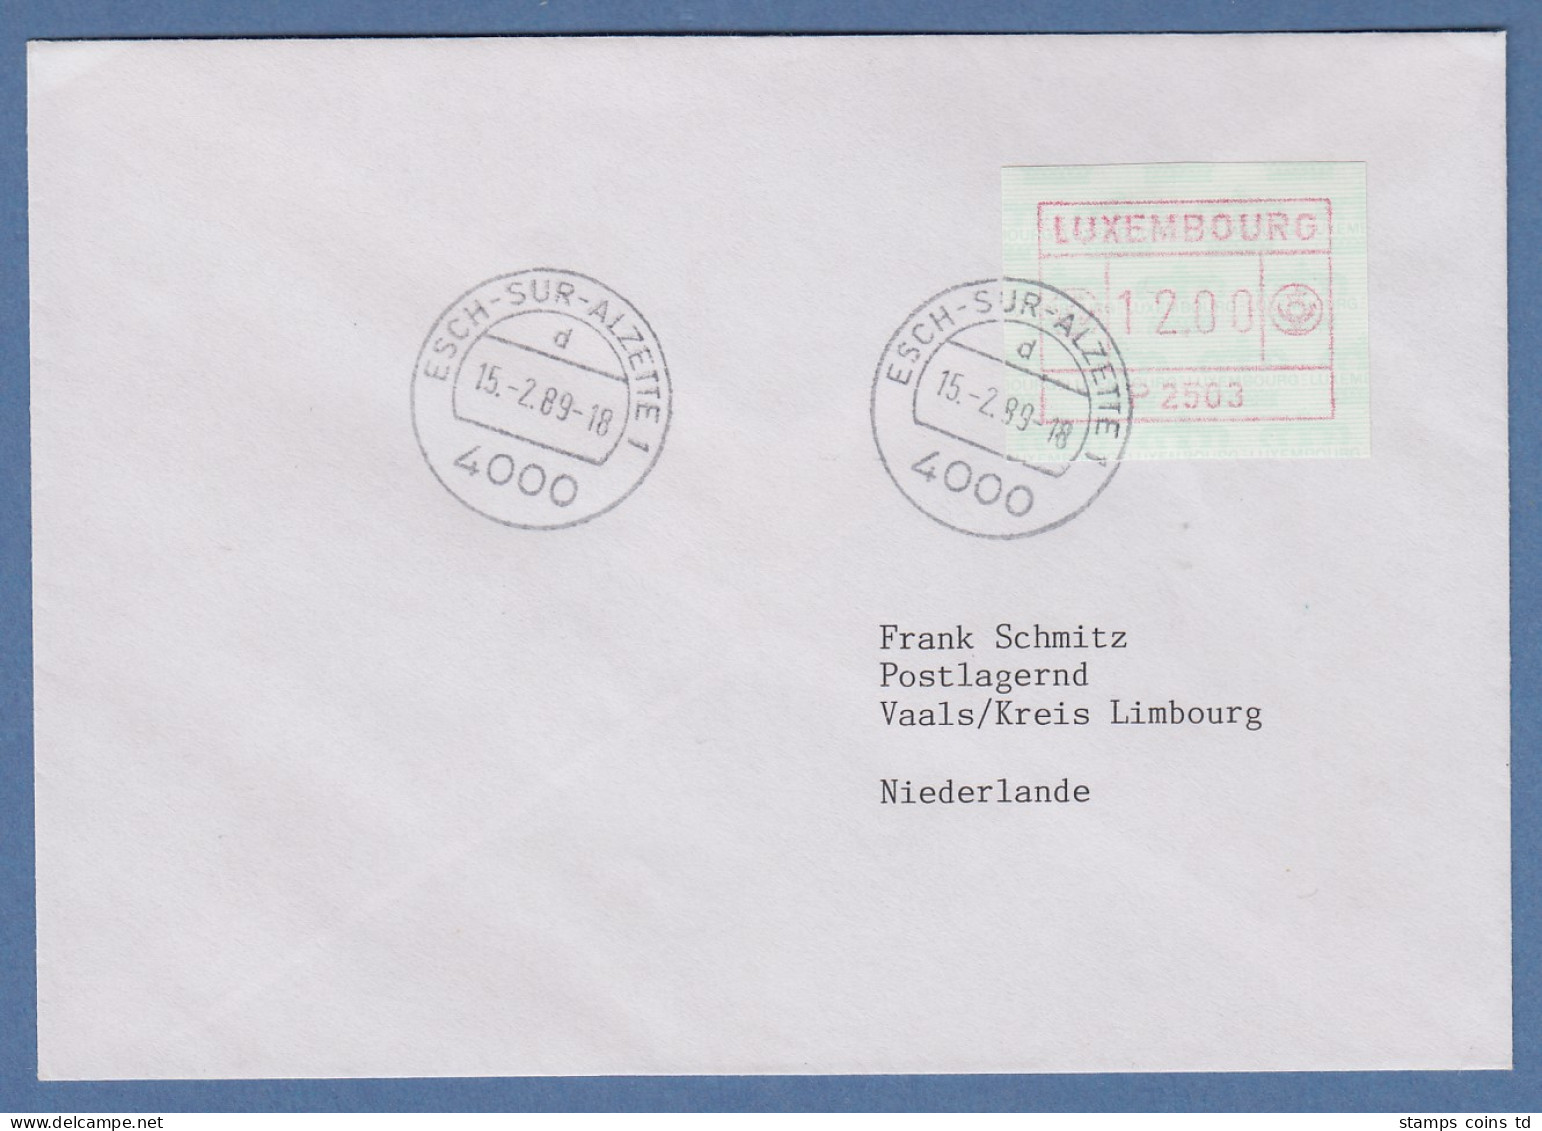 Luxemburg ATM P2503 Wert 12,00 Auf Brief In Die Niederlande, 15.2.89 - Frankeervignetten